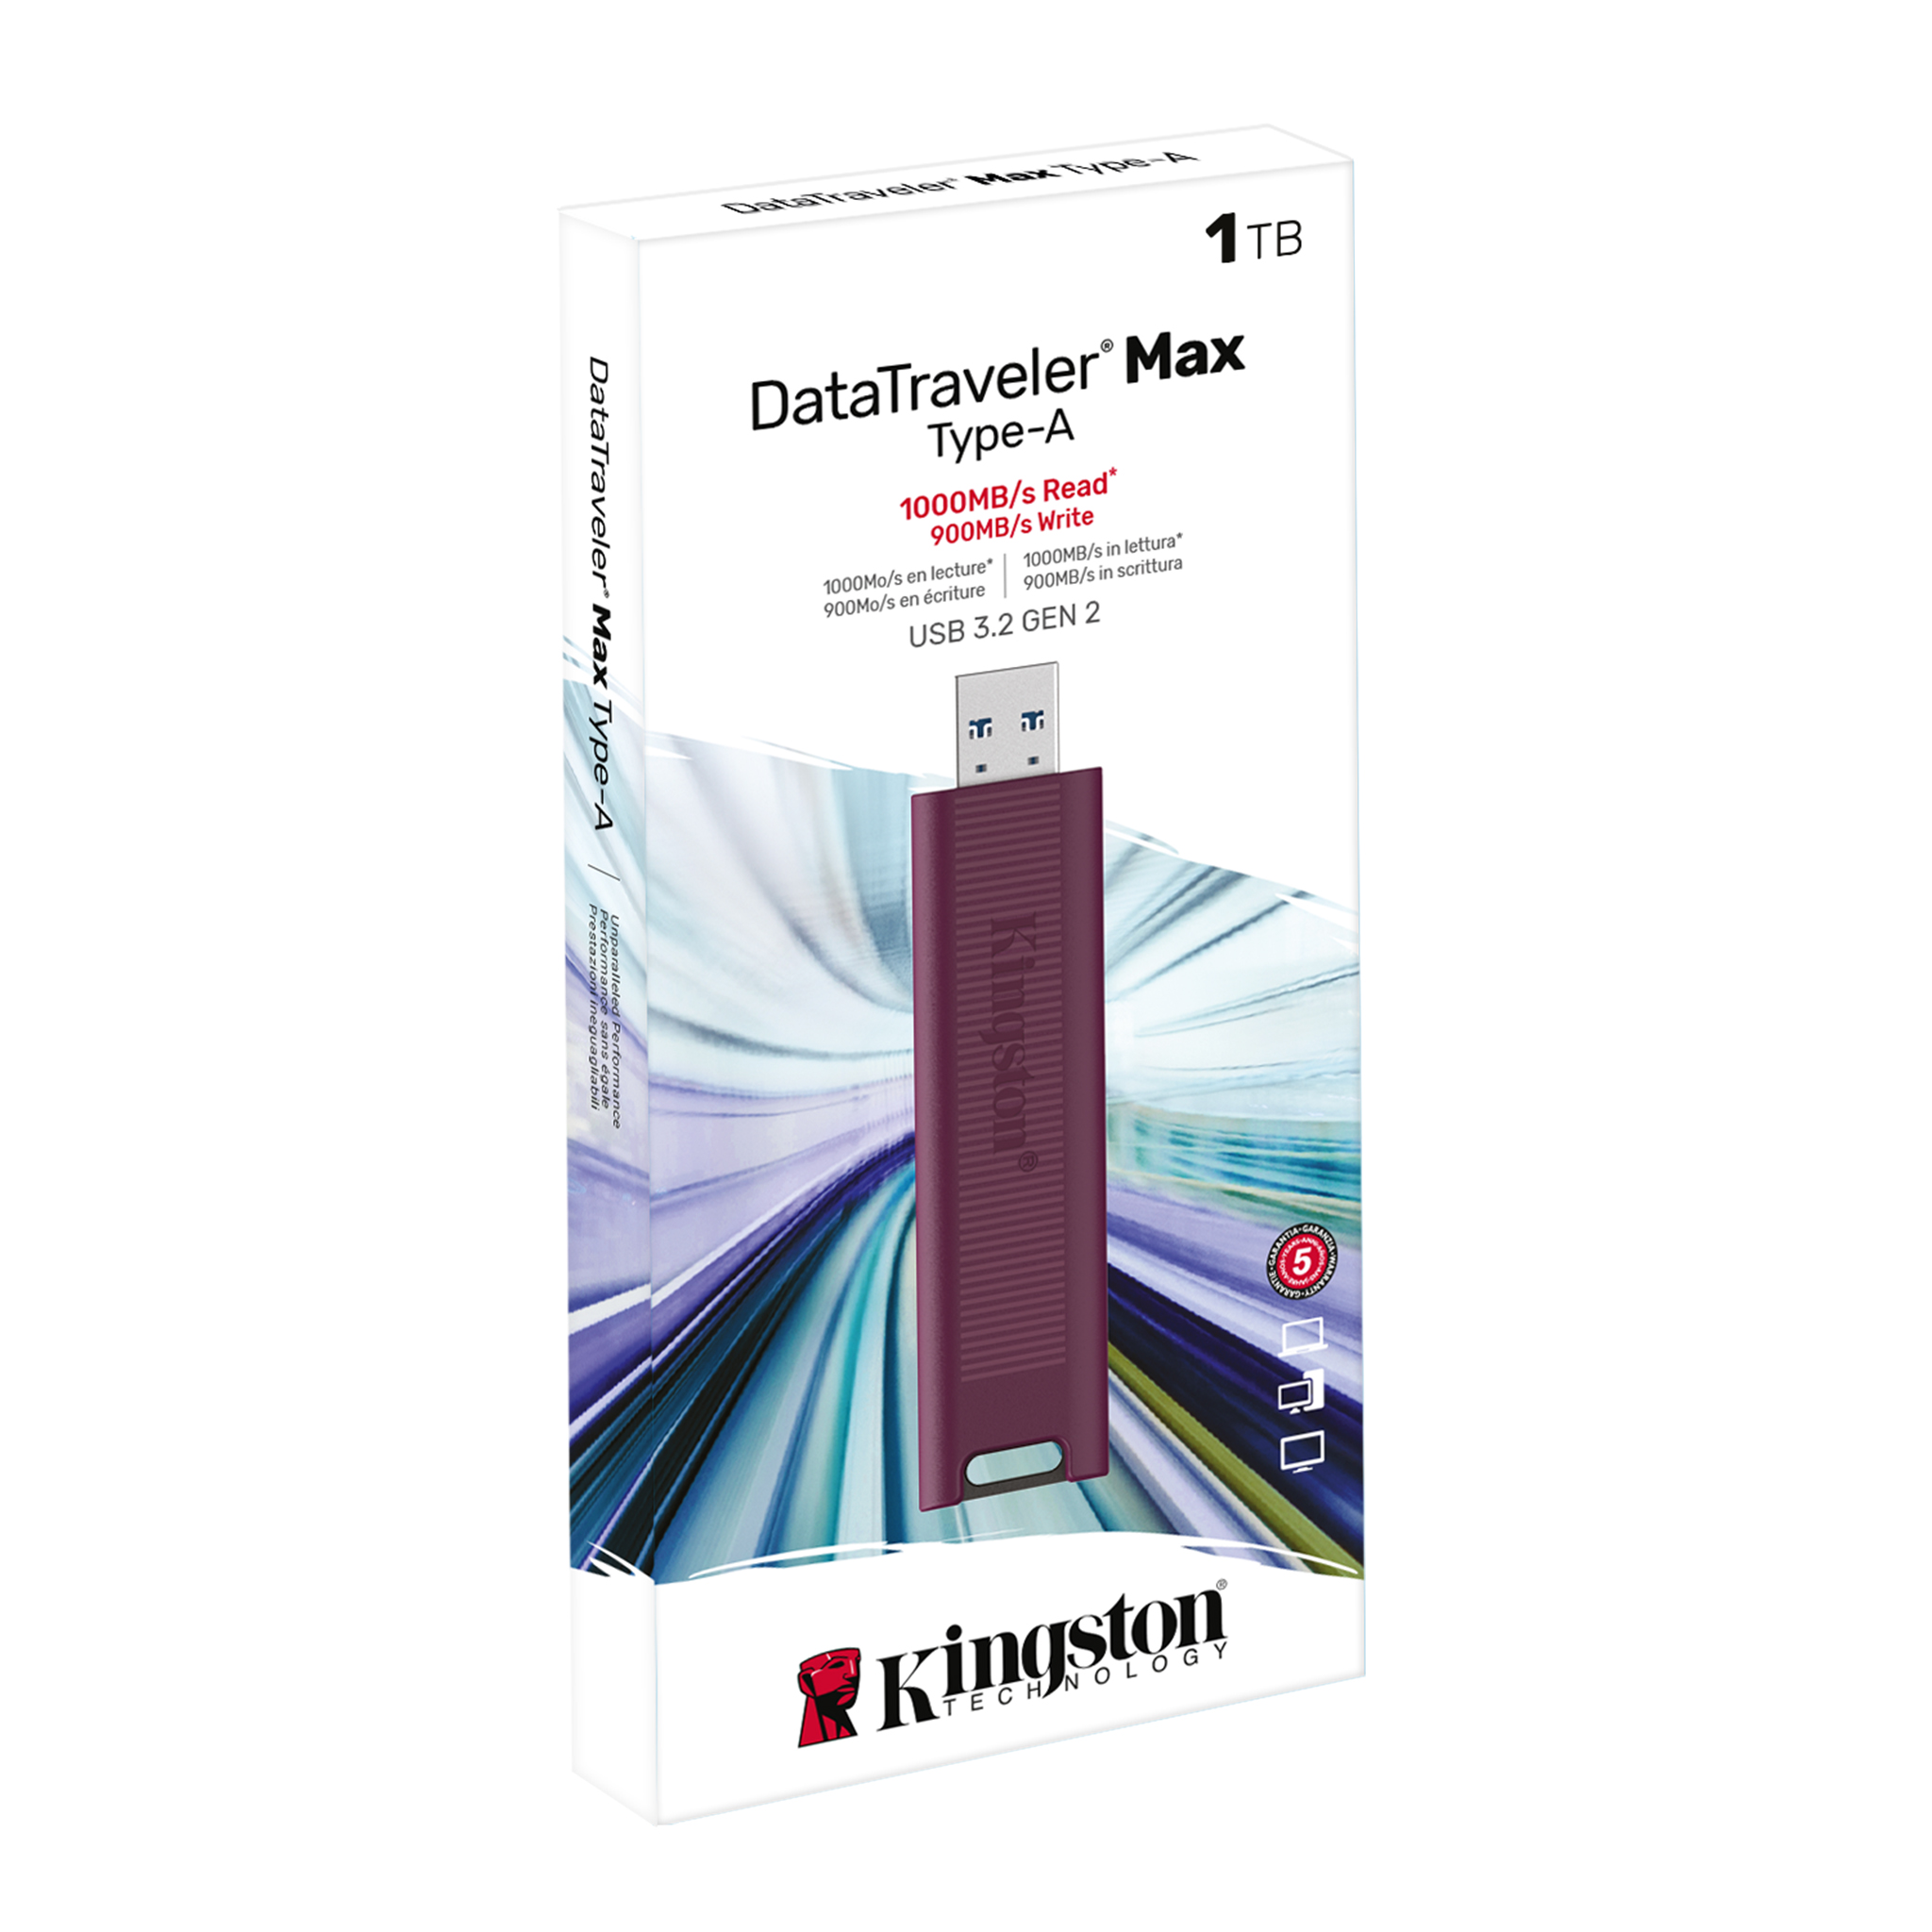 DataTraveler Max - USB 3.2 Gen 2 USB-C, USB-A Series Flash Drives